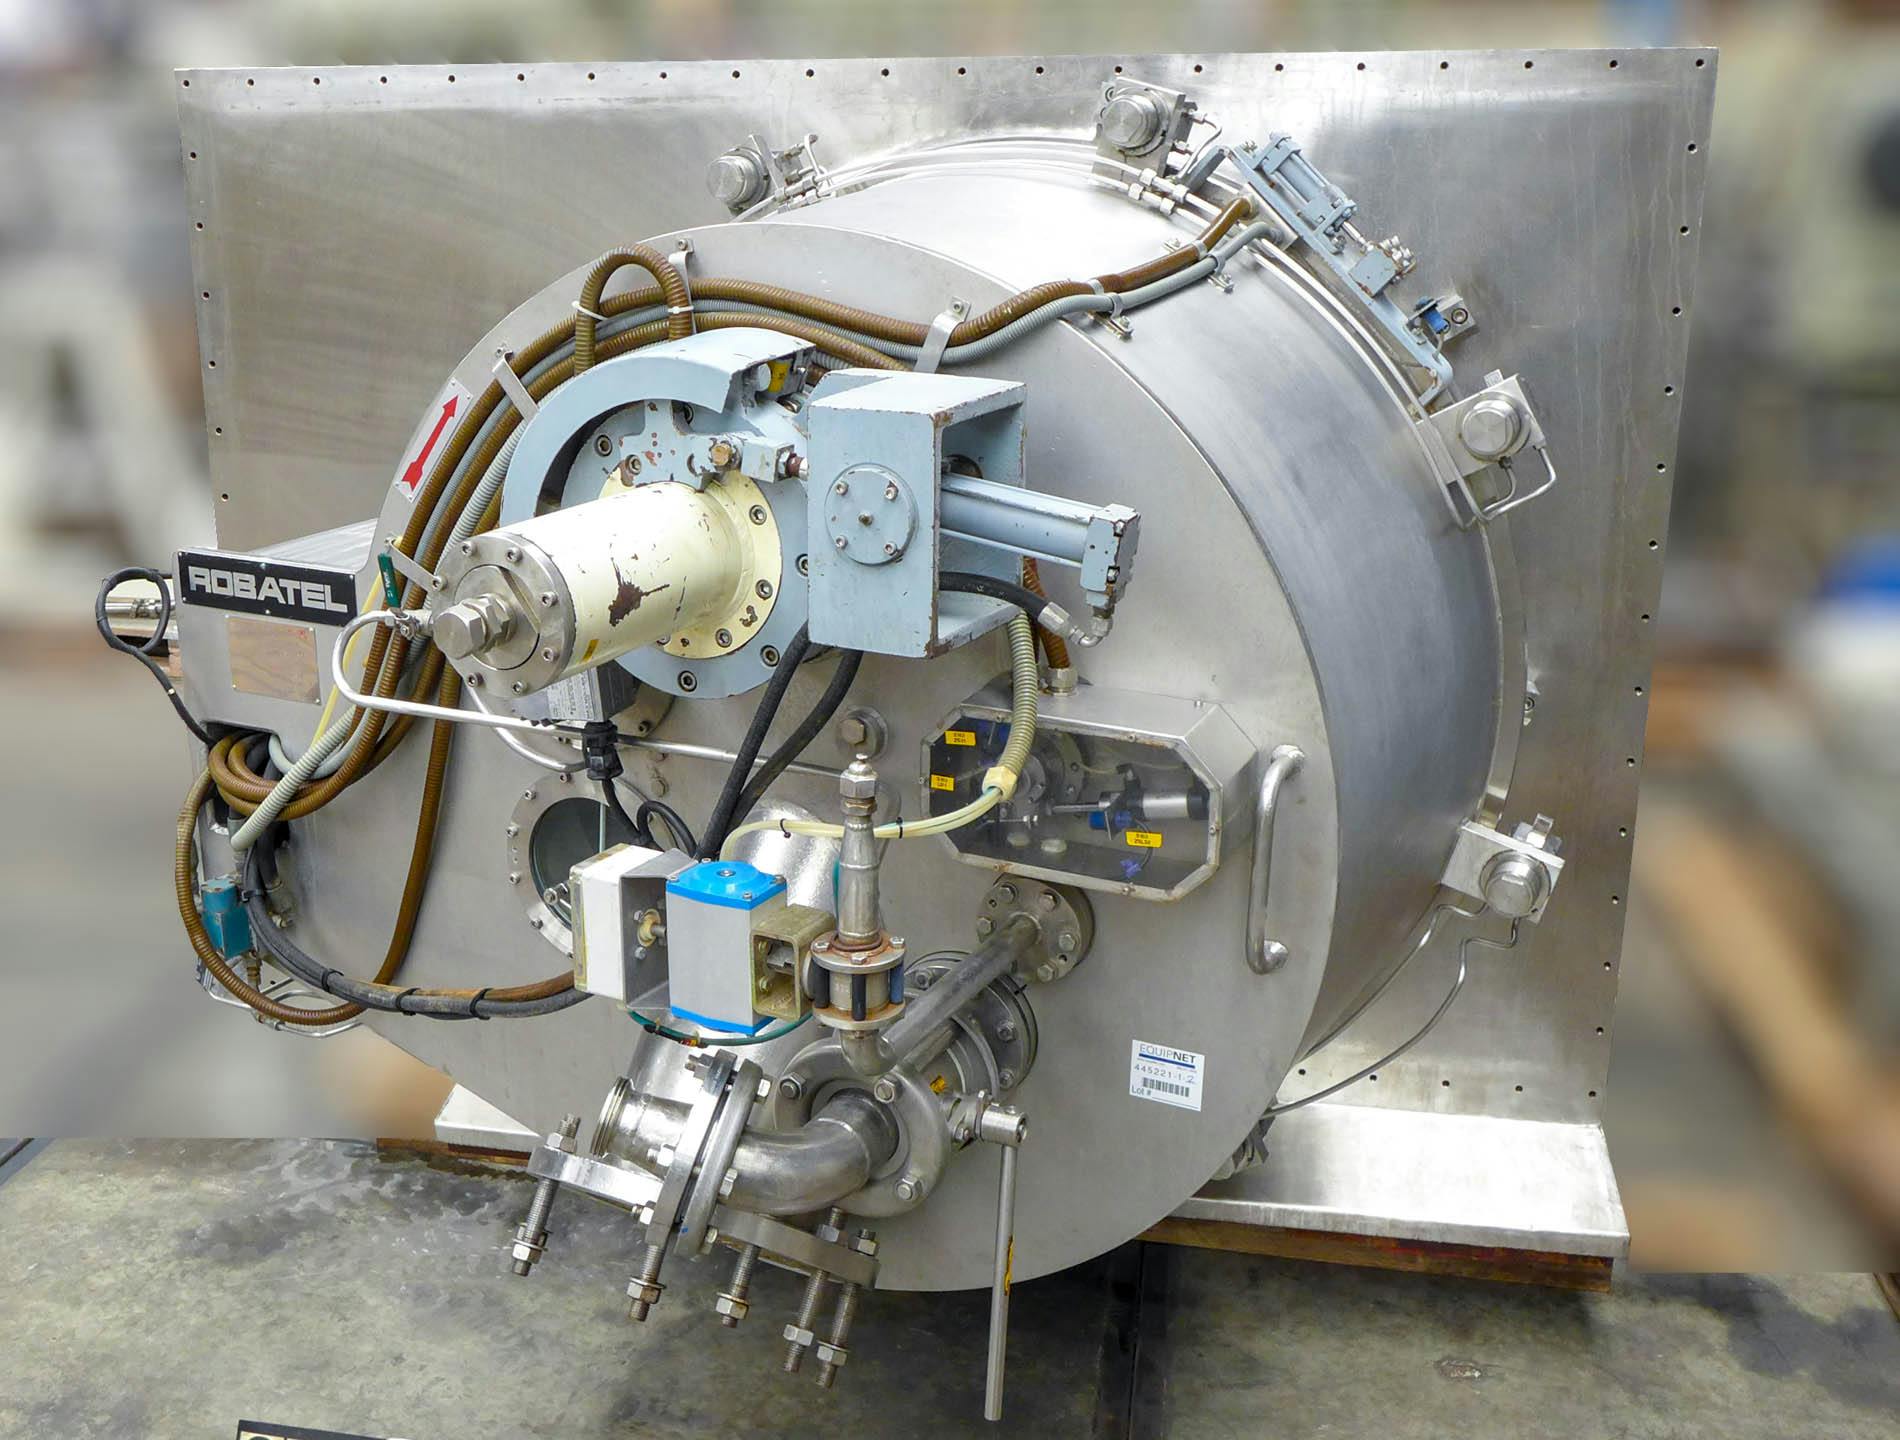 Robatel horizontal peeler centrifuge - Schälzentrifuge - image 3